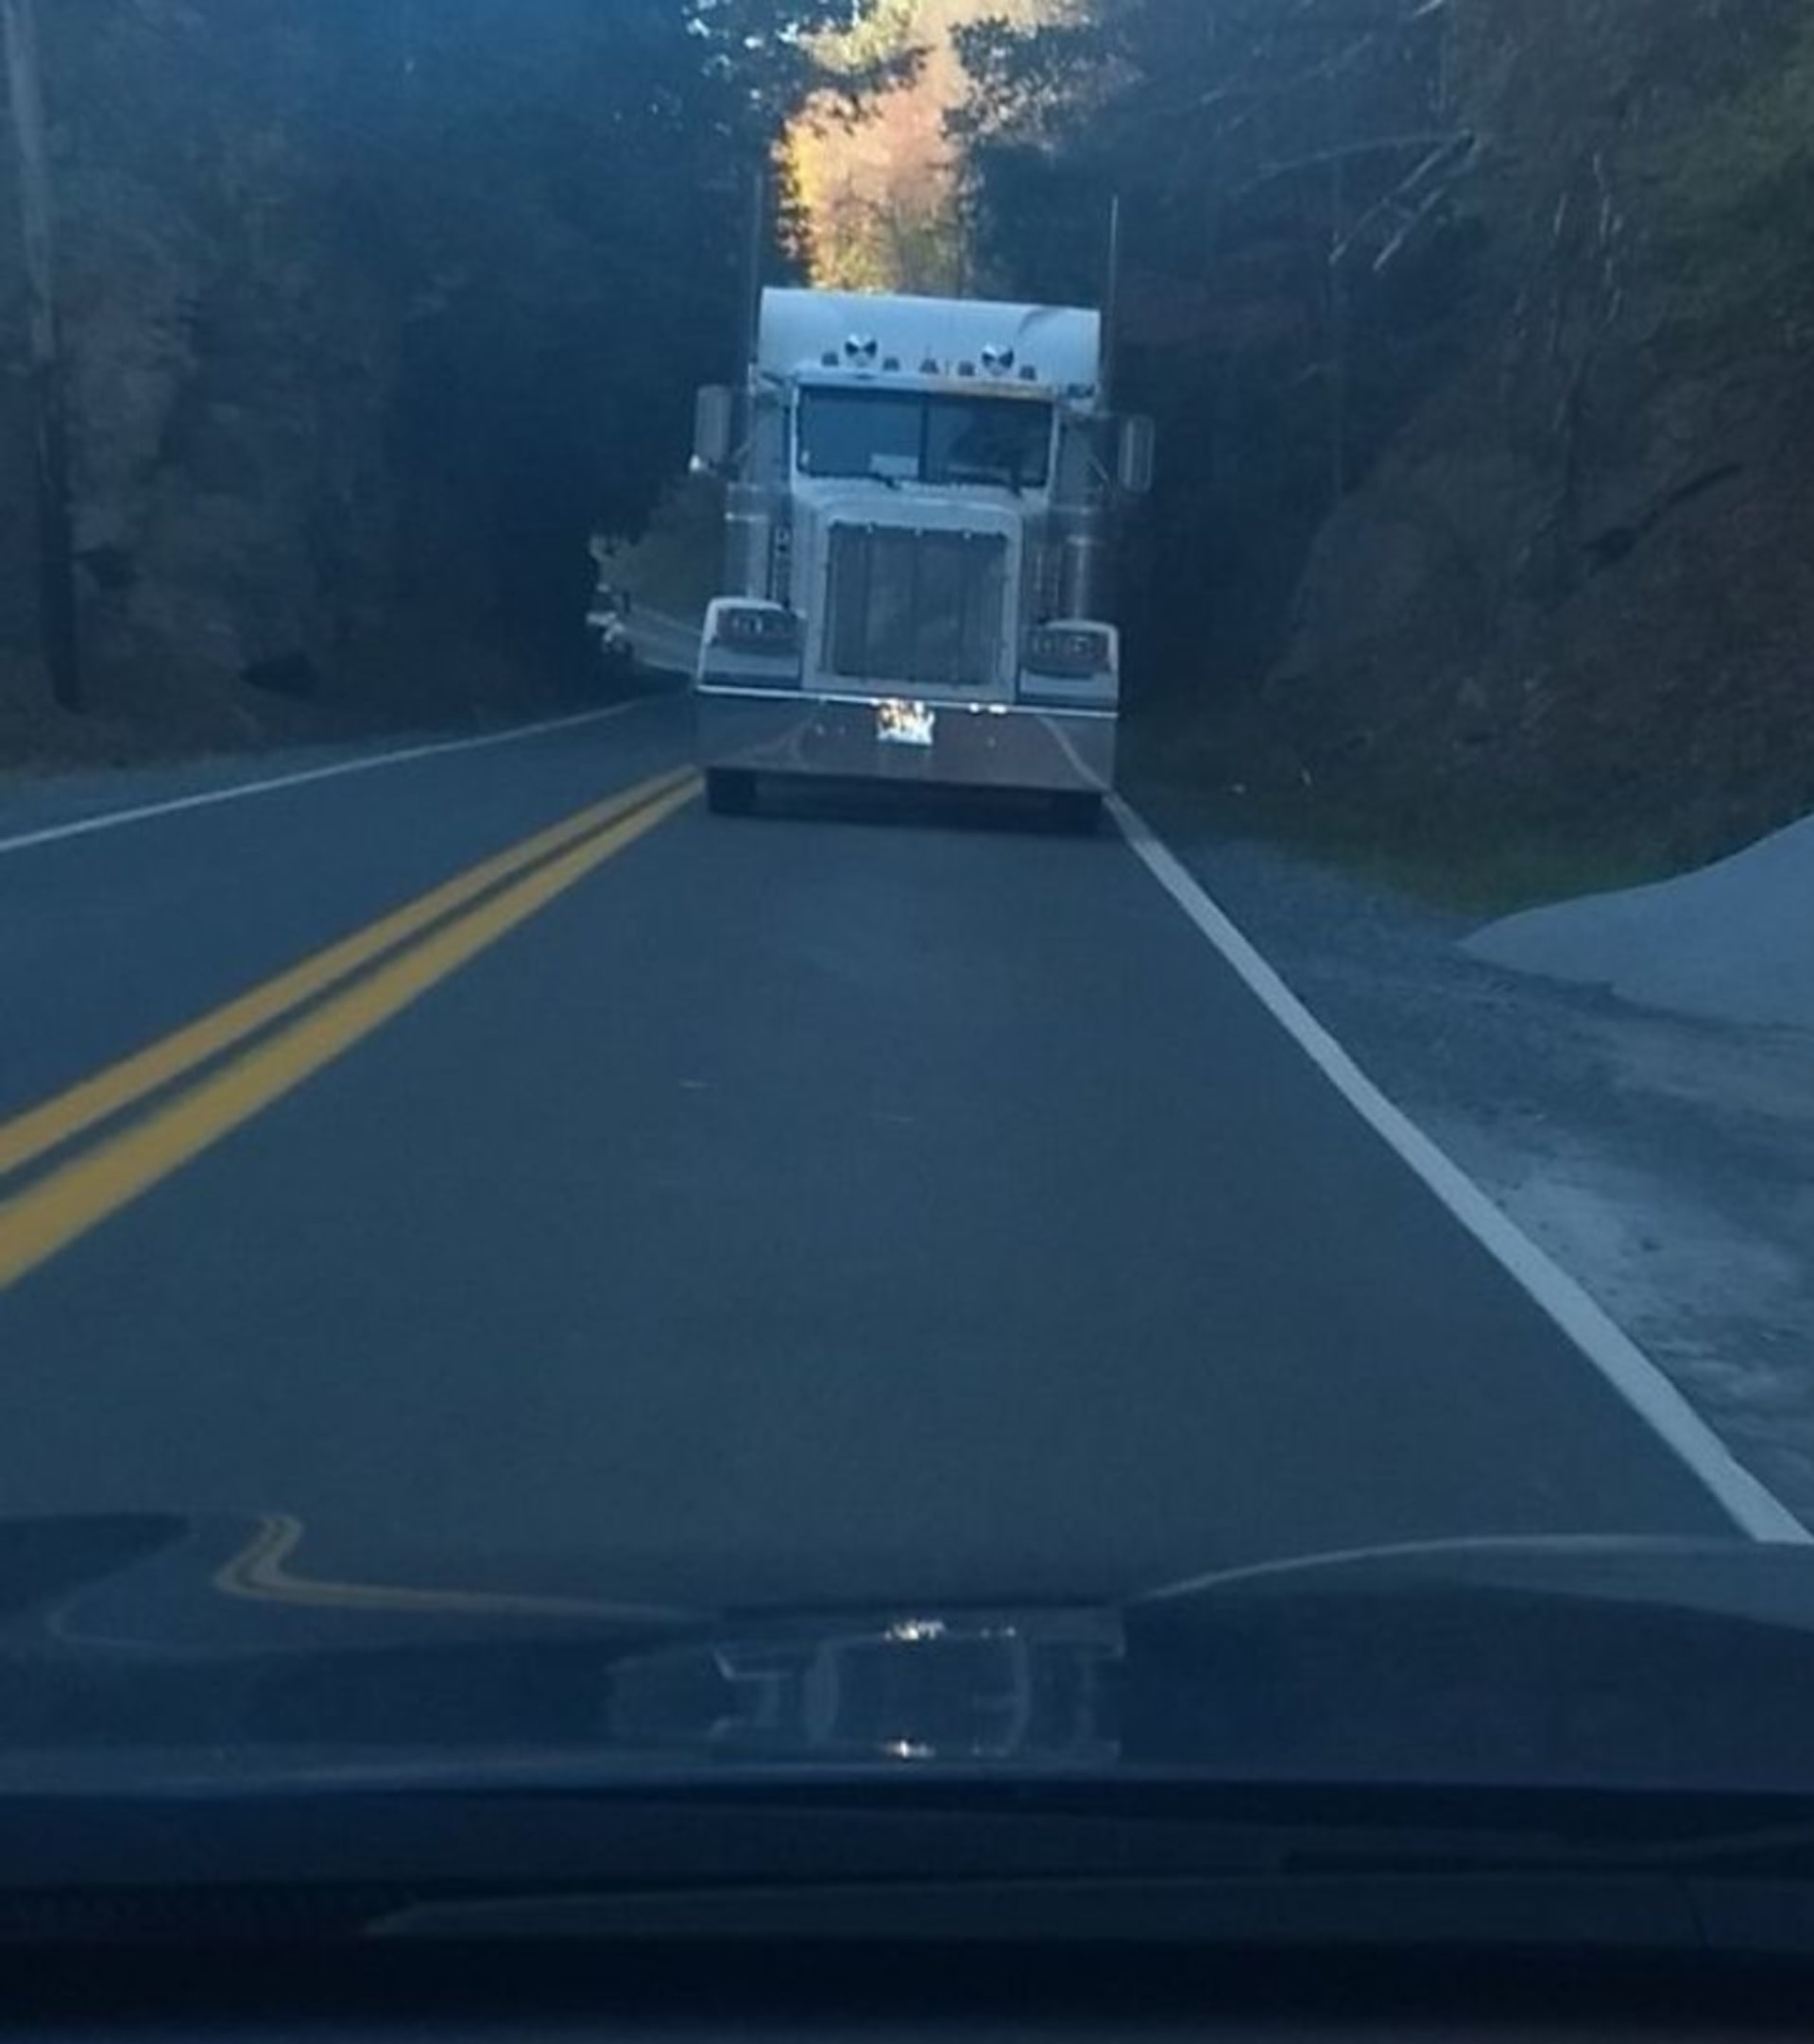 Je s tím kamionem všechno správně?